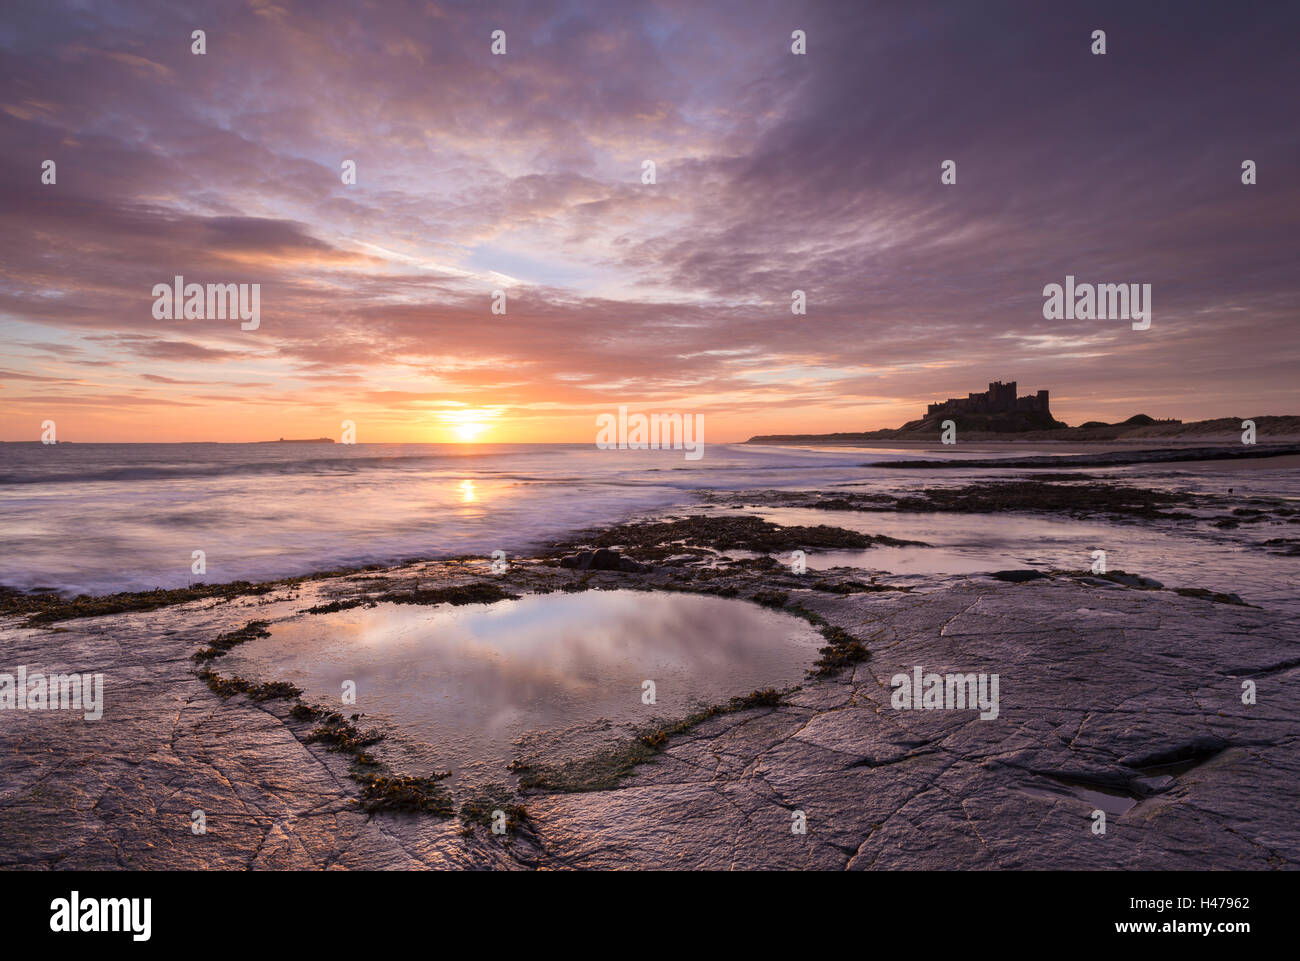 Piscine en forme de cœur sur la plage de Bamburgh au lever du soleil, Northumberland, Angleterre. Printemps (mars) 2015. Banque D'Images